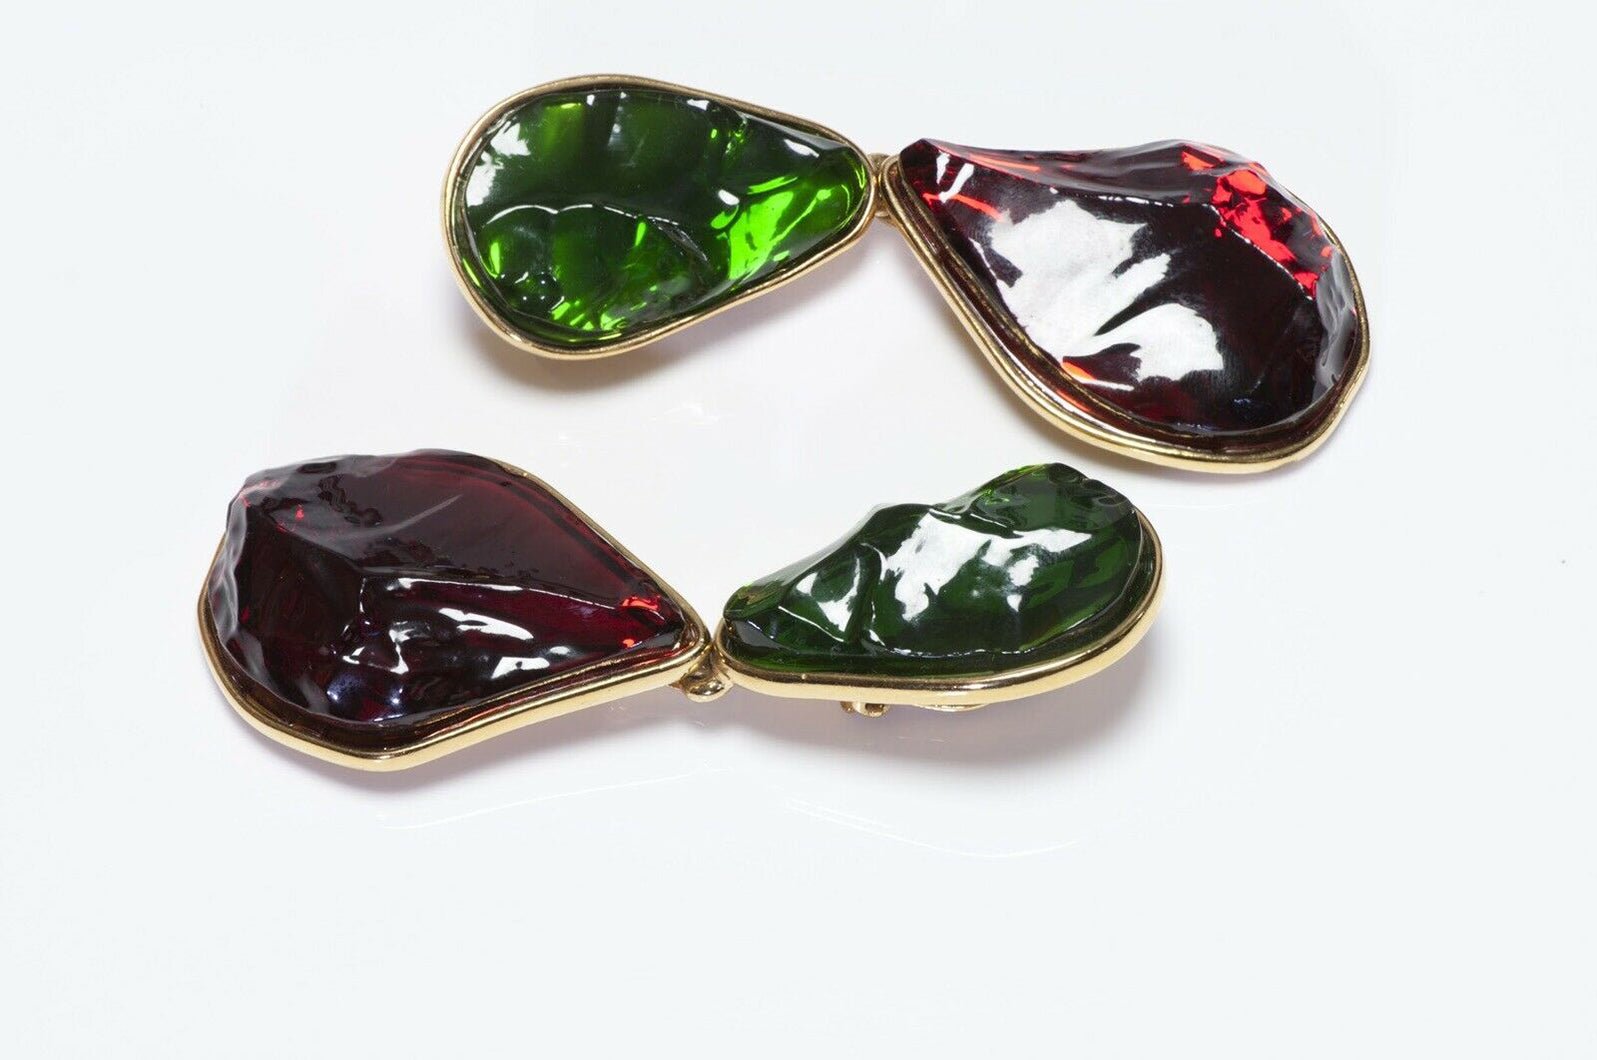 Yves Saint Laurent Rive Gauche Goossens Green Red Glass Earrings